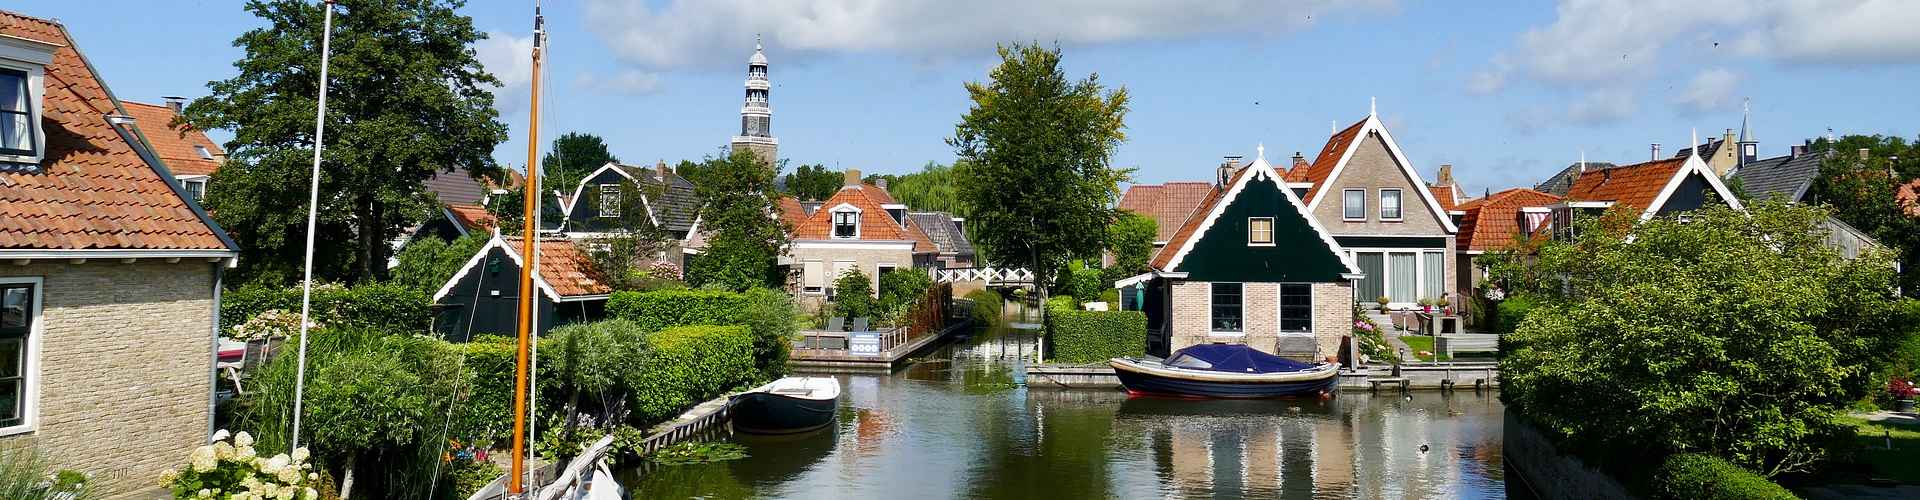 Eine Ortslandschaft mit Häusern. Ein Kanal mit Boote